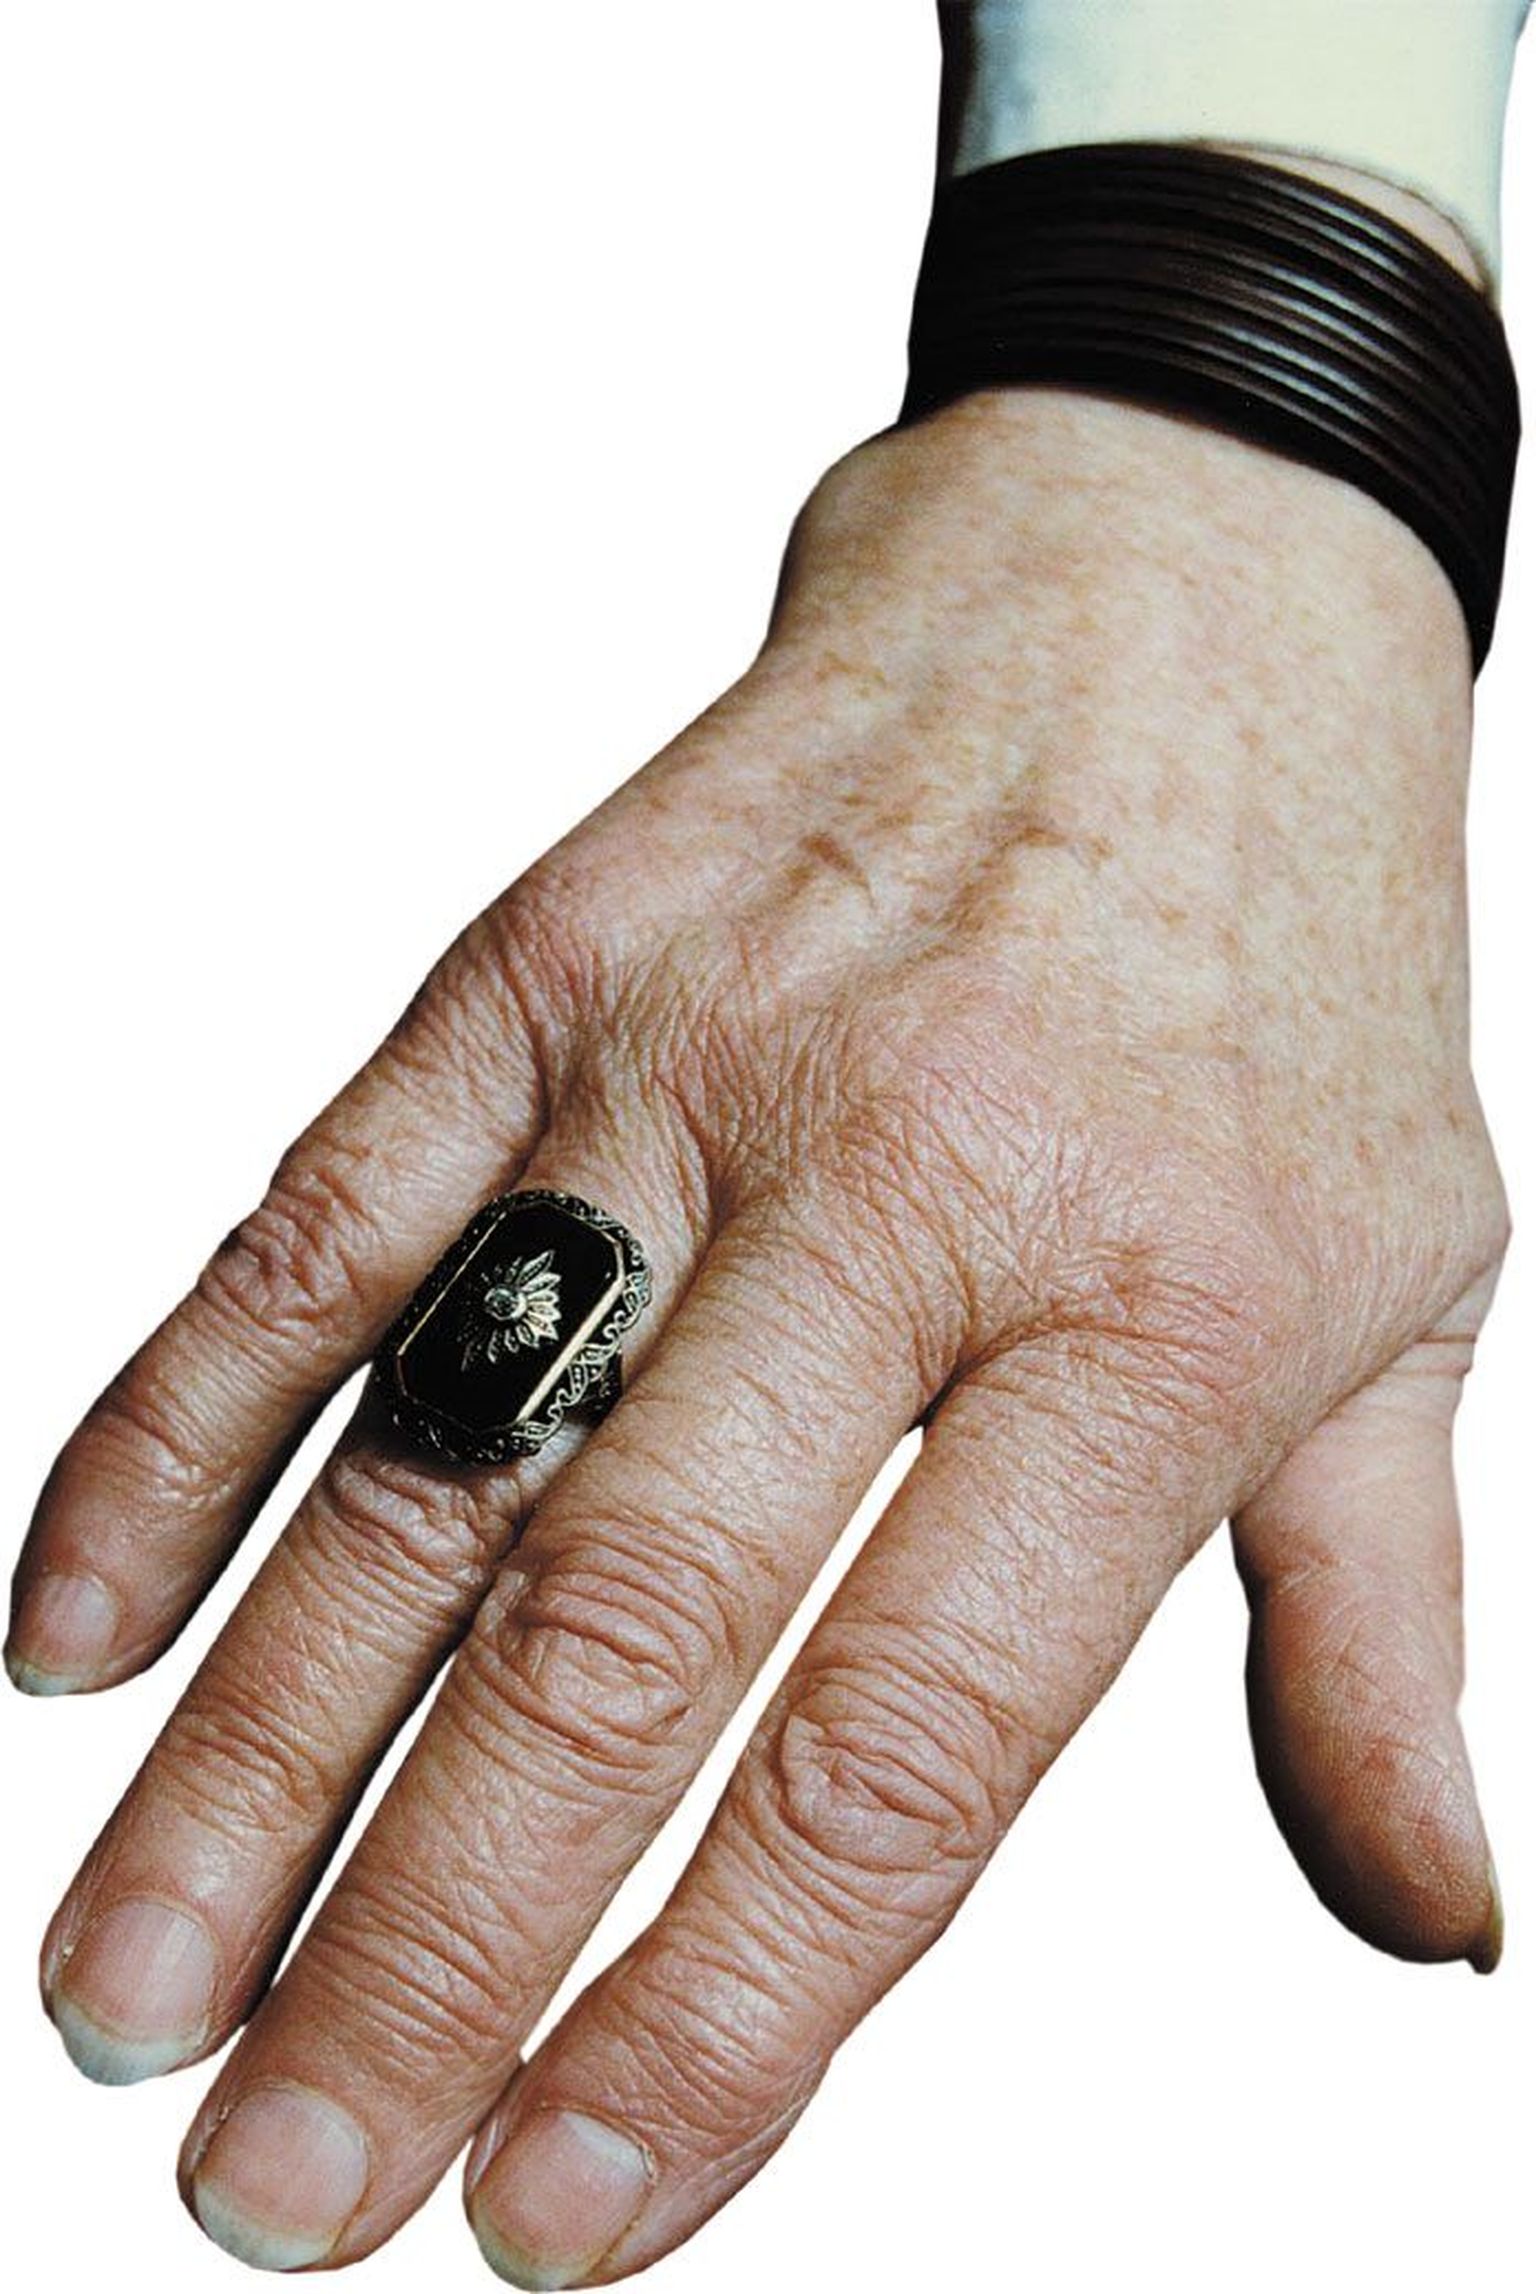 Ita Everi sõrmes on 1997. aastal kunagi Liina Reimanile kuulunud sõrmus, mida ta kandis vaid kõige pidulikematel teatri ja isiklikel tähtpäevadel.